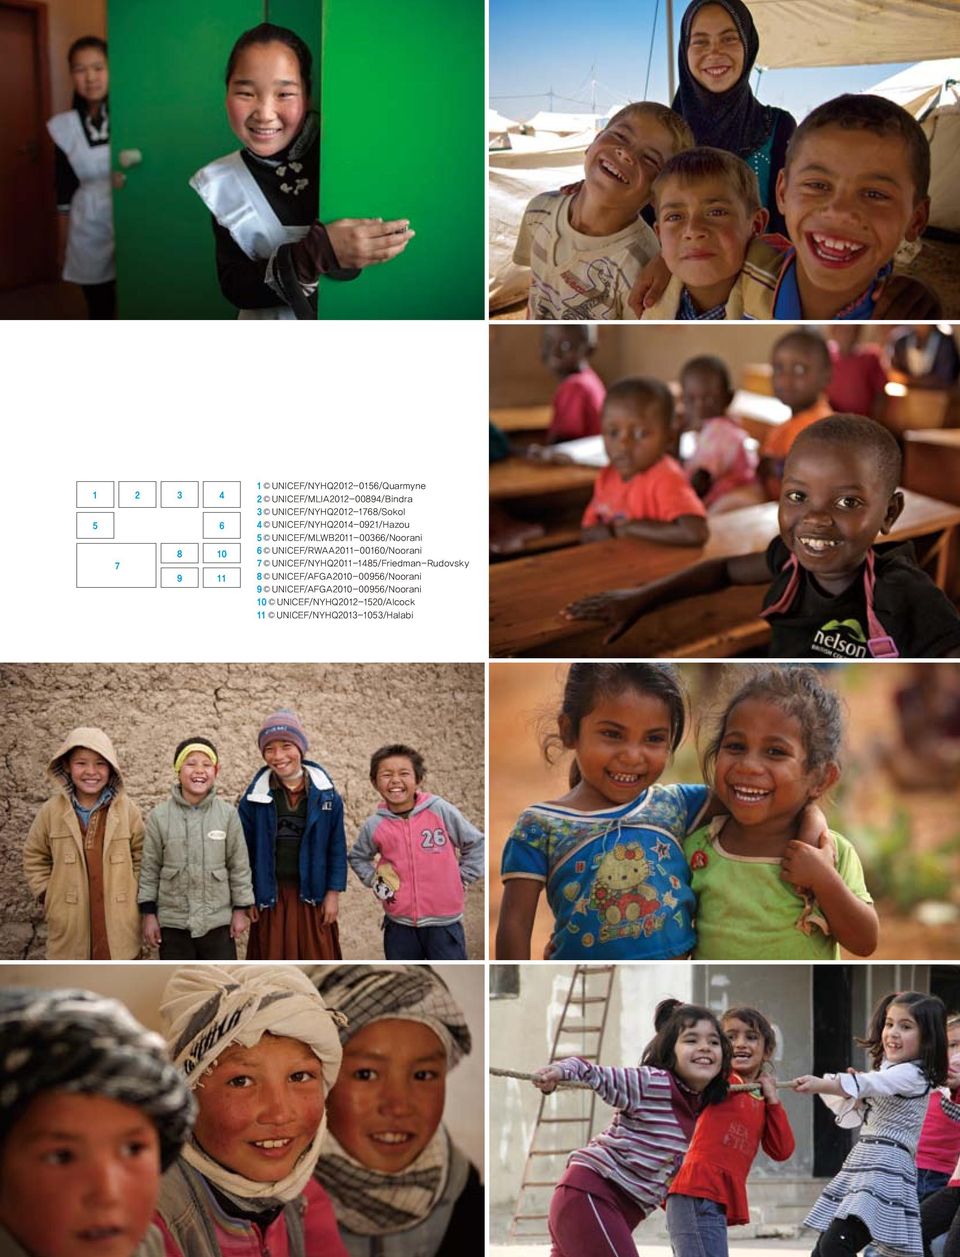 UNICEF/RWAA2011-00160/Noorani 7 UNICEF/NYHQ2011-1485/Friedman-Rudovsky 8